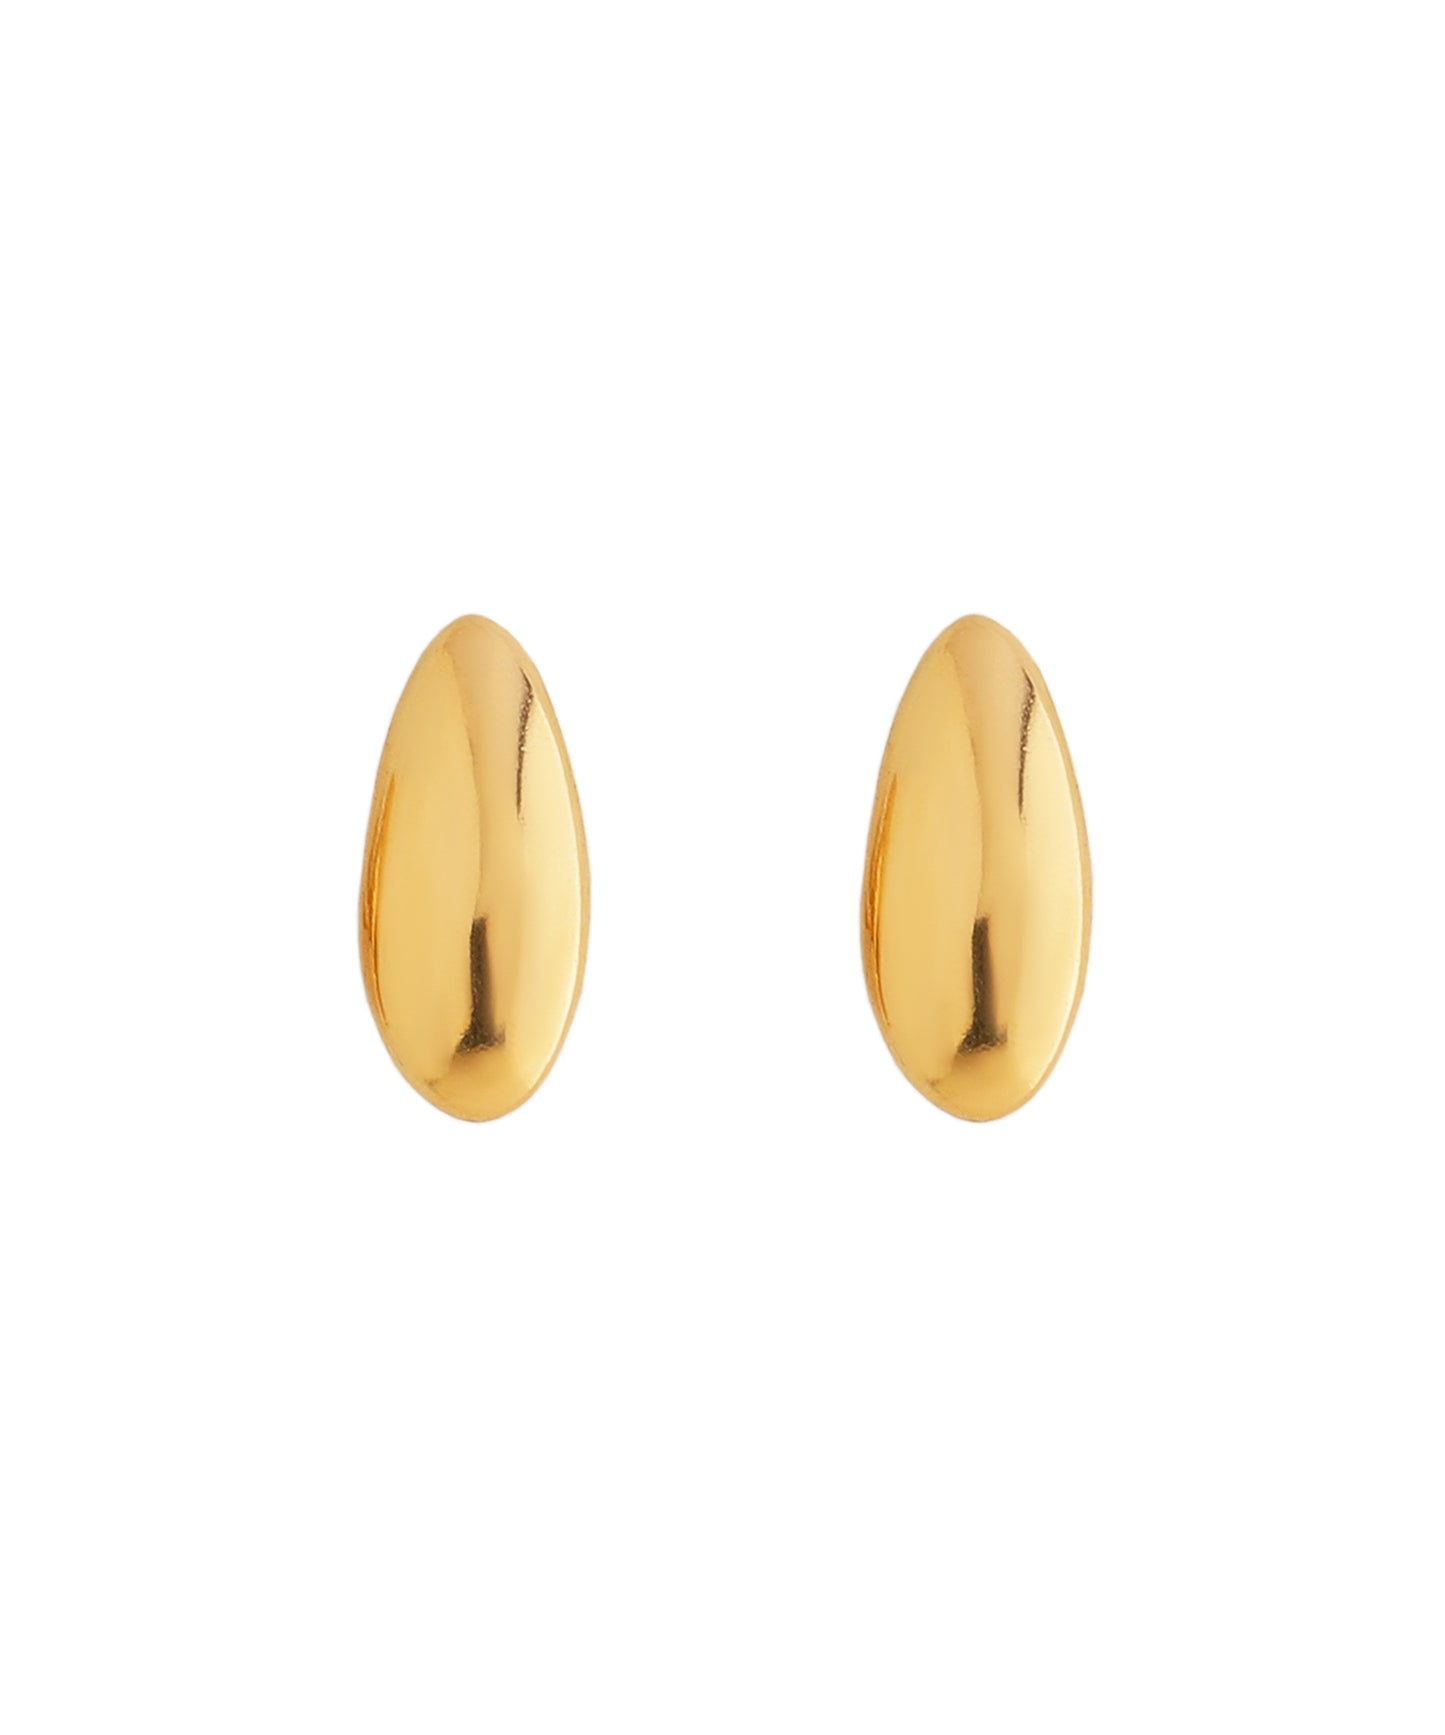 【Stainless Steel IP】 Seed Earrings